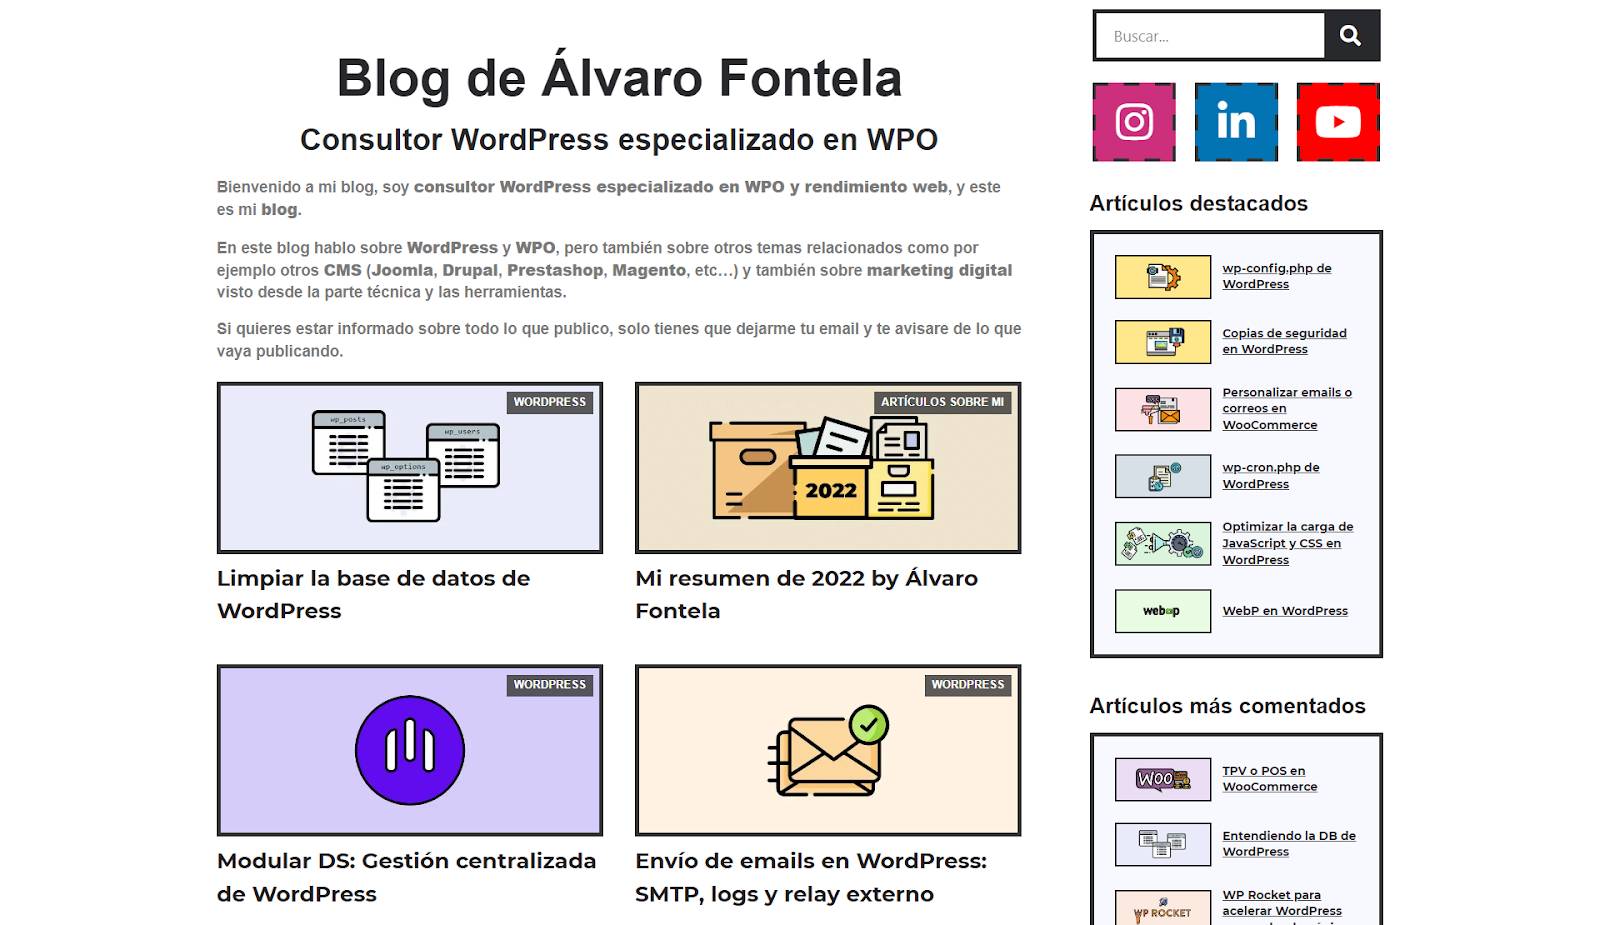 Alvaro Fontela Newsletter WordPress Modular